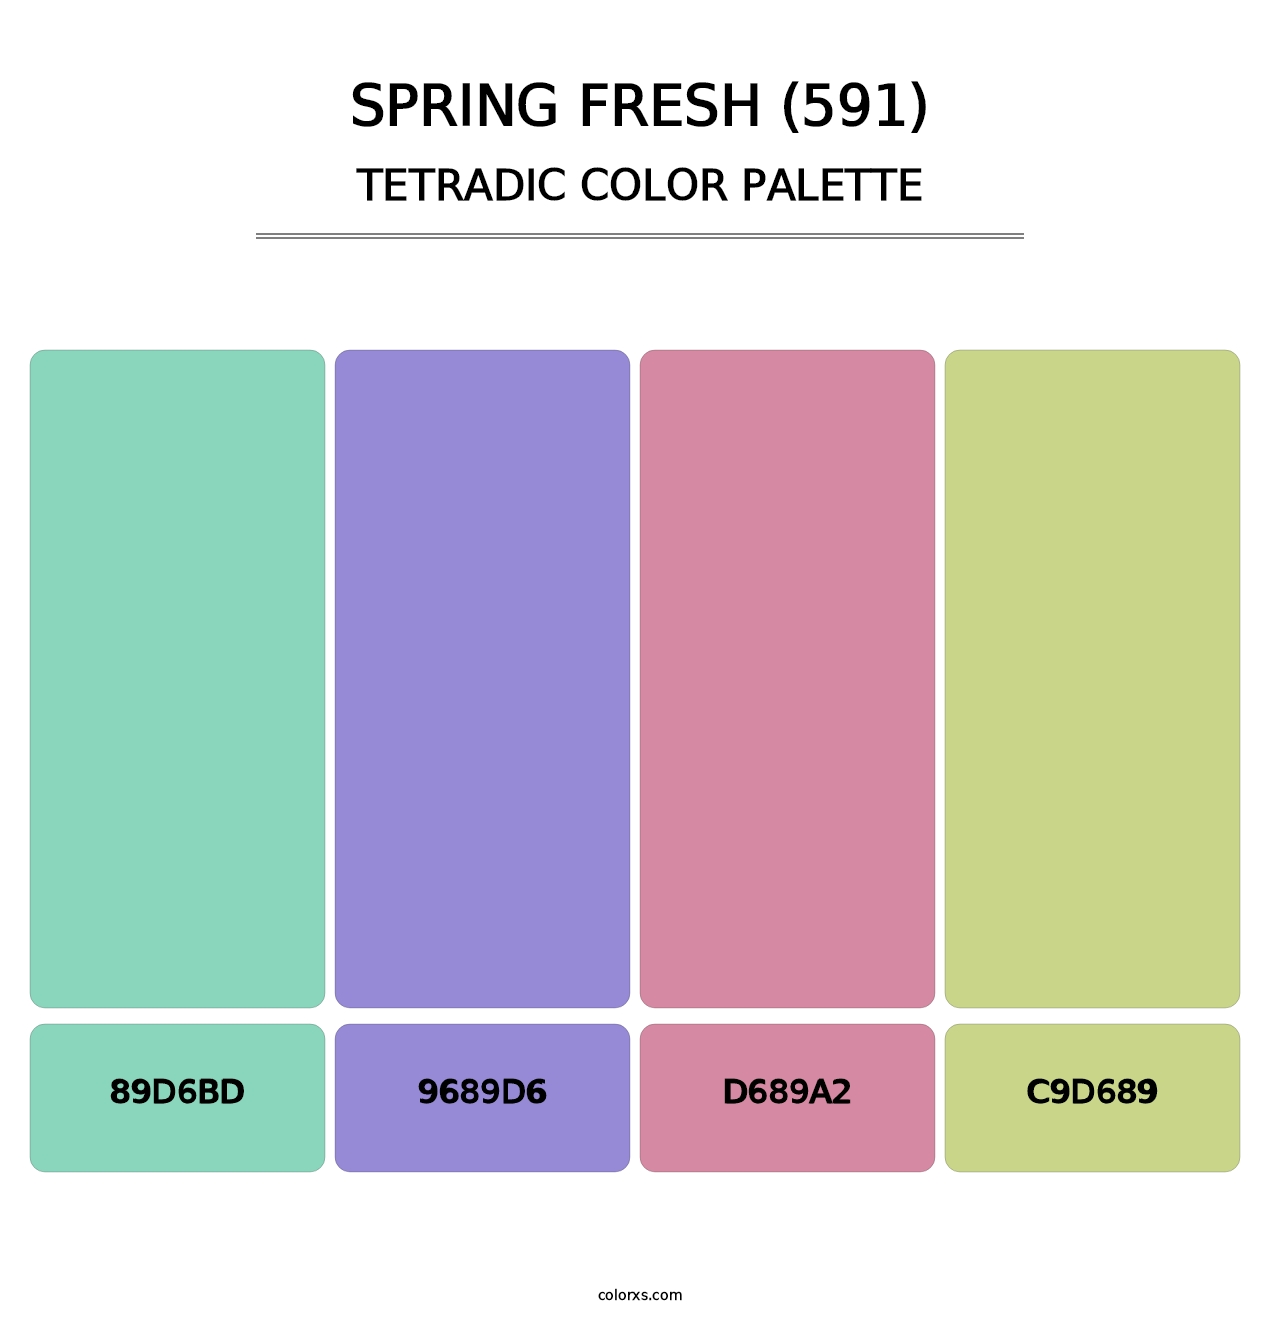 Spring Fresh (591) - Tetradic Color Palette